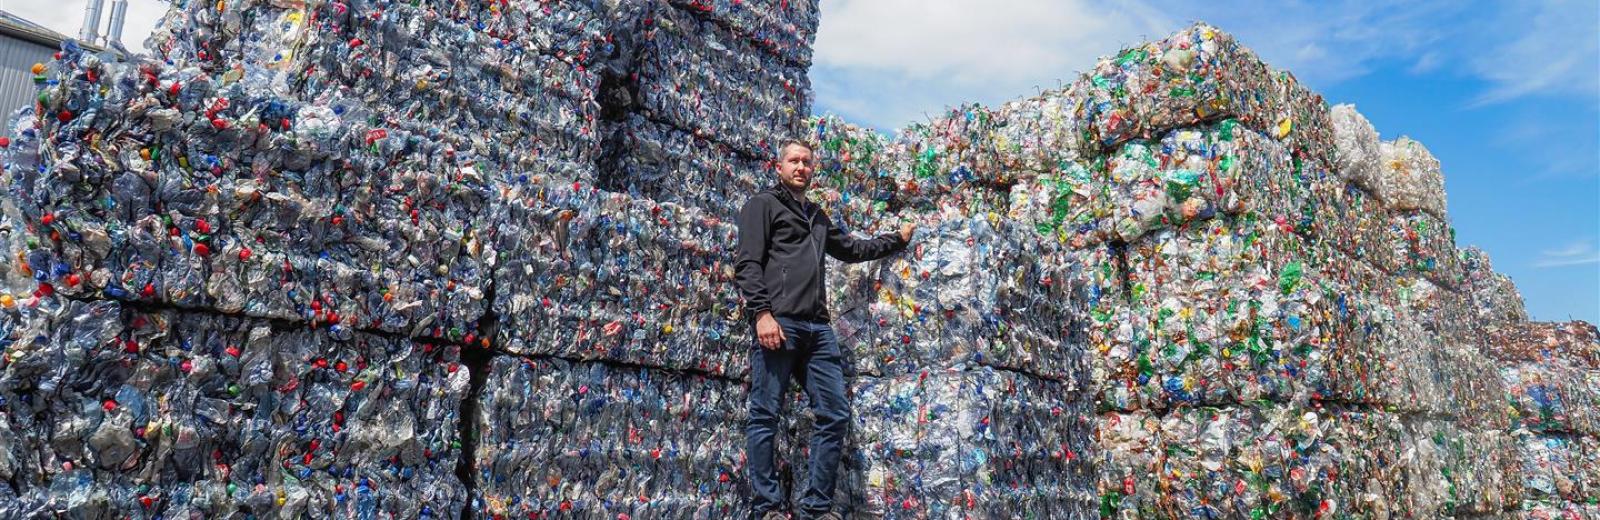 Ogni giorno Müller Recycling smista per colore 90 tonnellate di bottiglie per bevande in PET. Il direttore dell’impresa Thomas Müller è fiero della purezza e dell’elevata qualità di questo materiale. © Müller Recycling AG